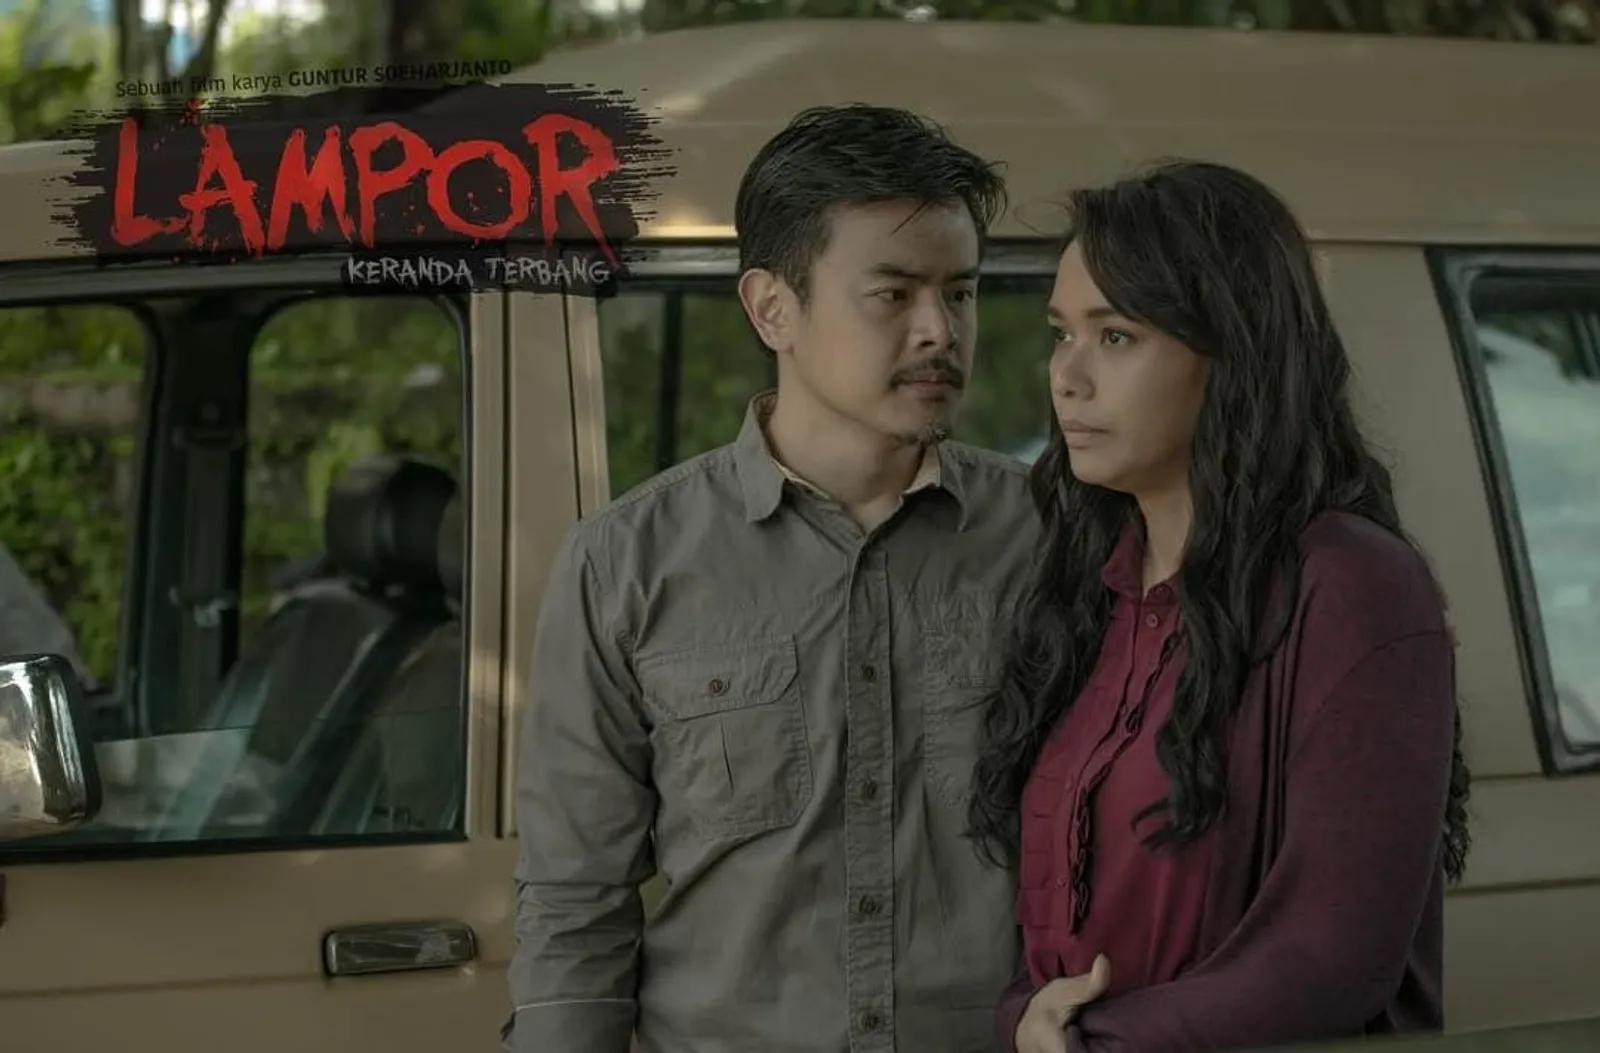 Didominasi Drama dan Horor, ini 11 Film Indonesia Tayang Oktober 2019